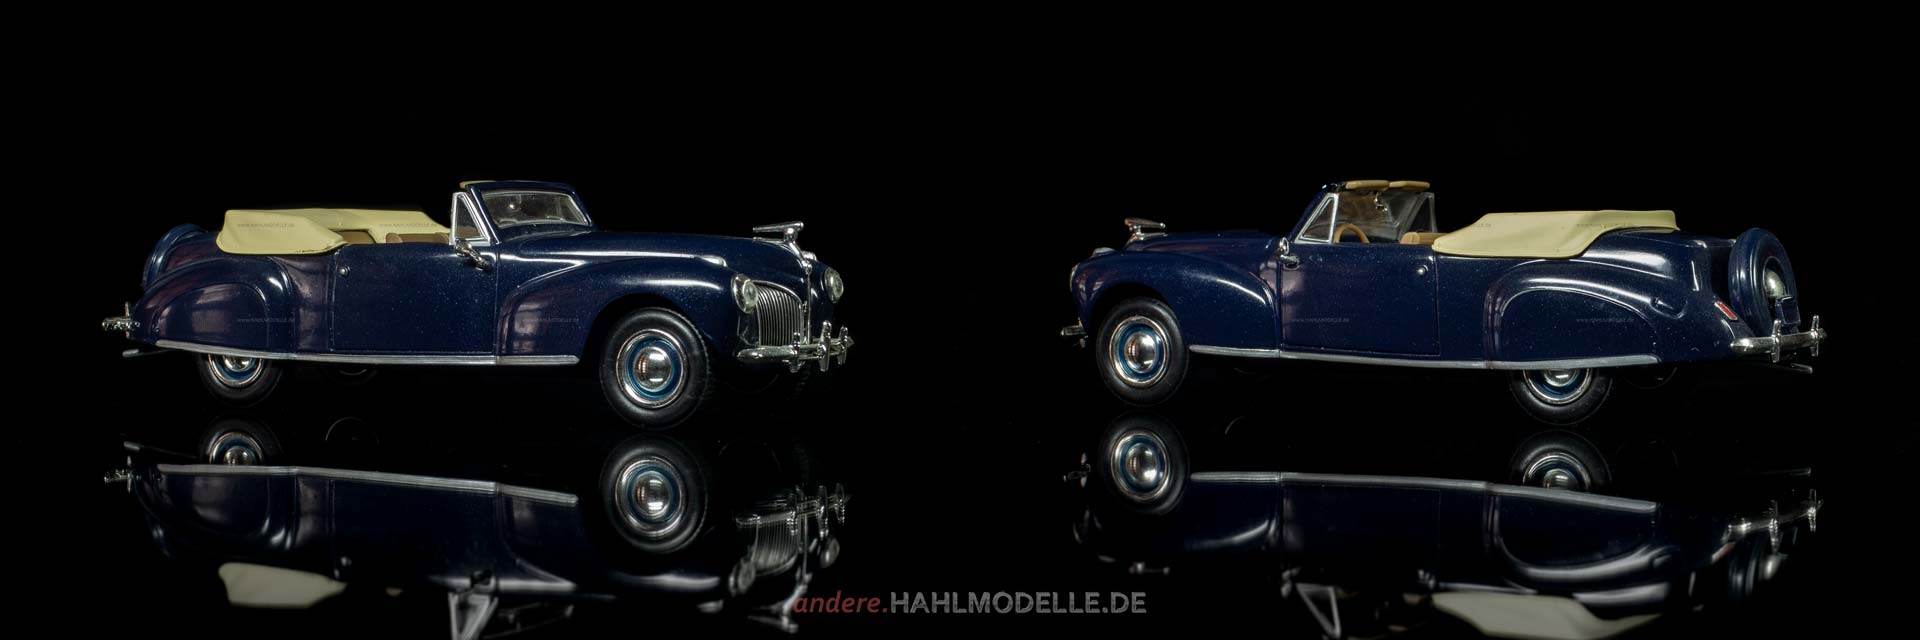 Lincoln Zephyr | Cabriolet | Ixo (Del Prado Car Collection) | 1:43 | www.andere.hahlmodelle.de